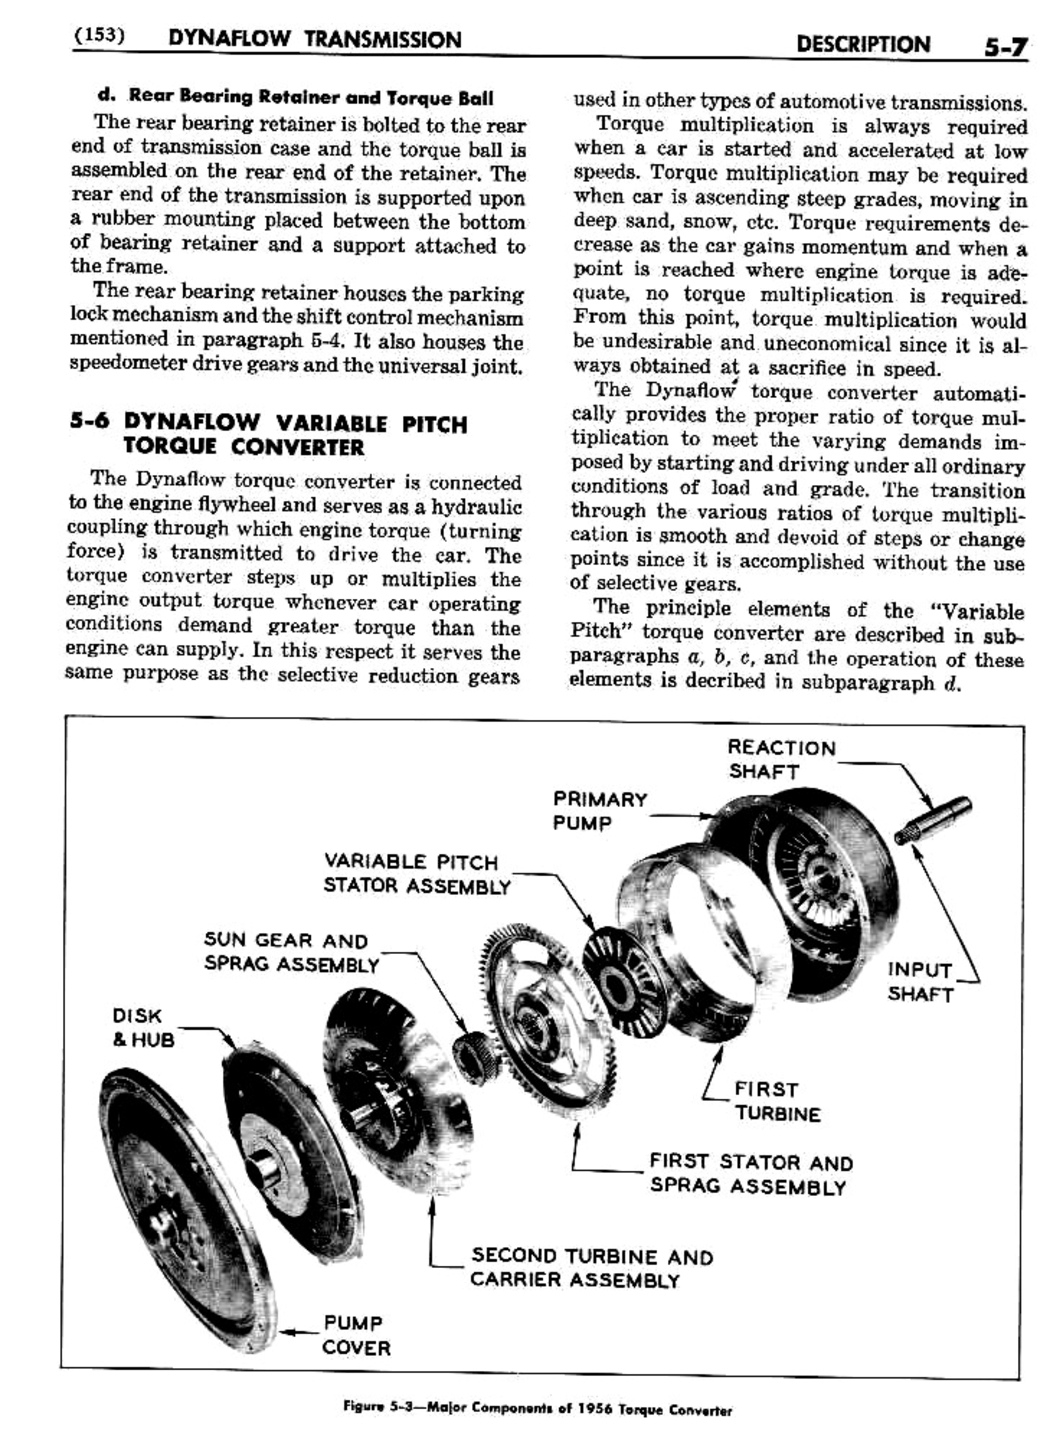 n_06 1956 Buick Shop Manual - Dynaflow-007-007.jpg